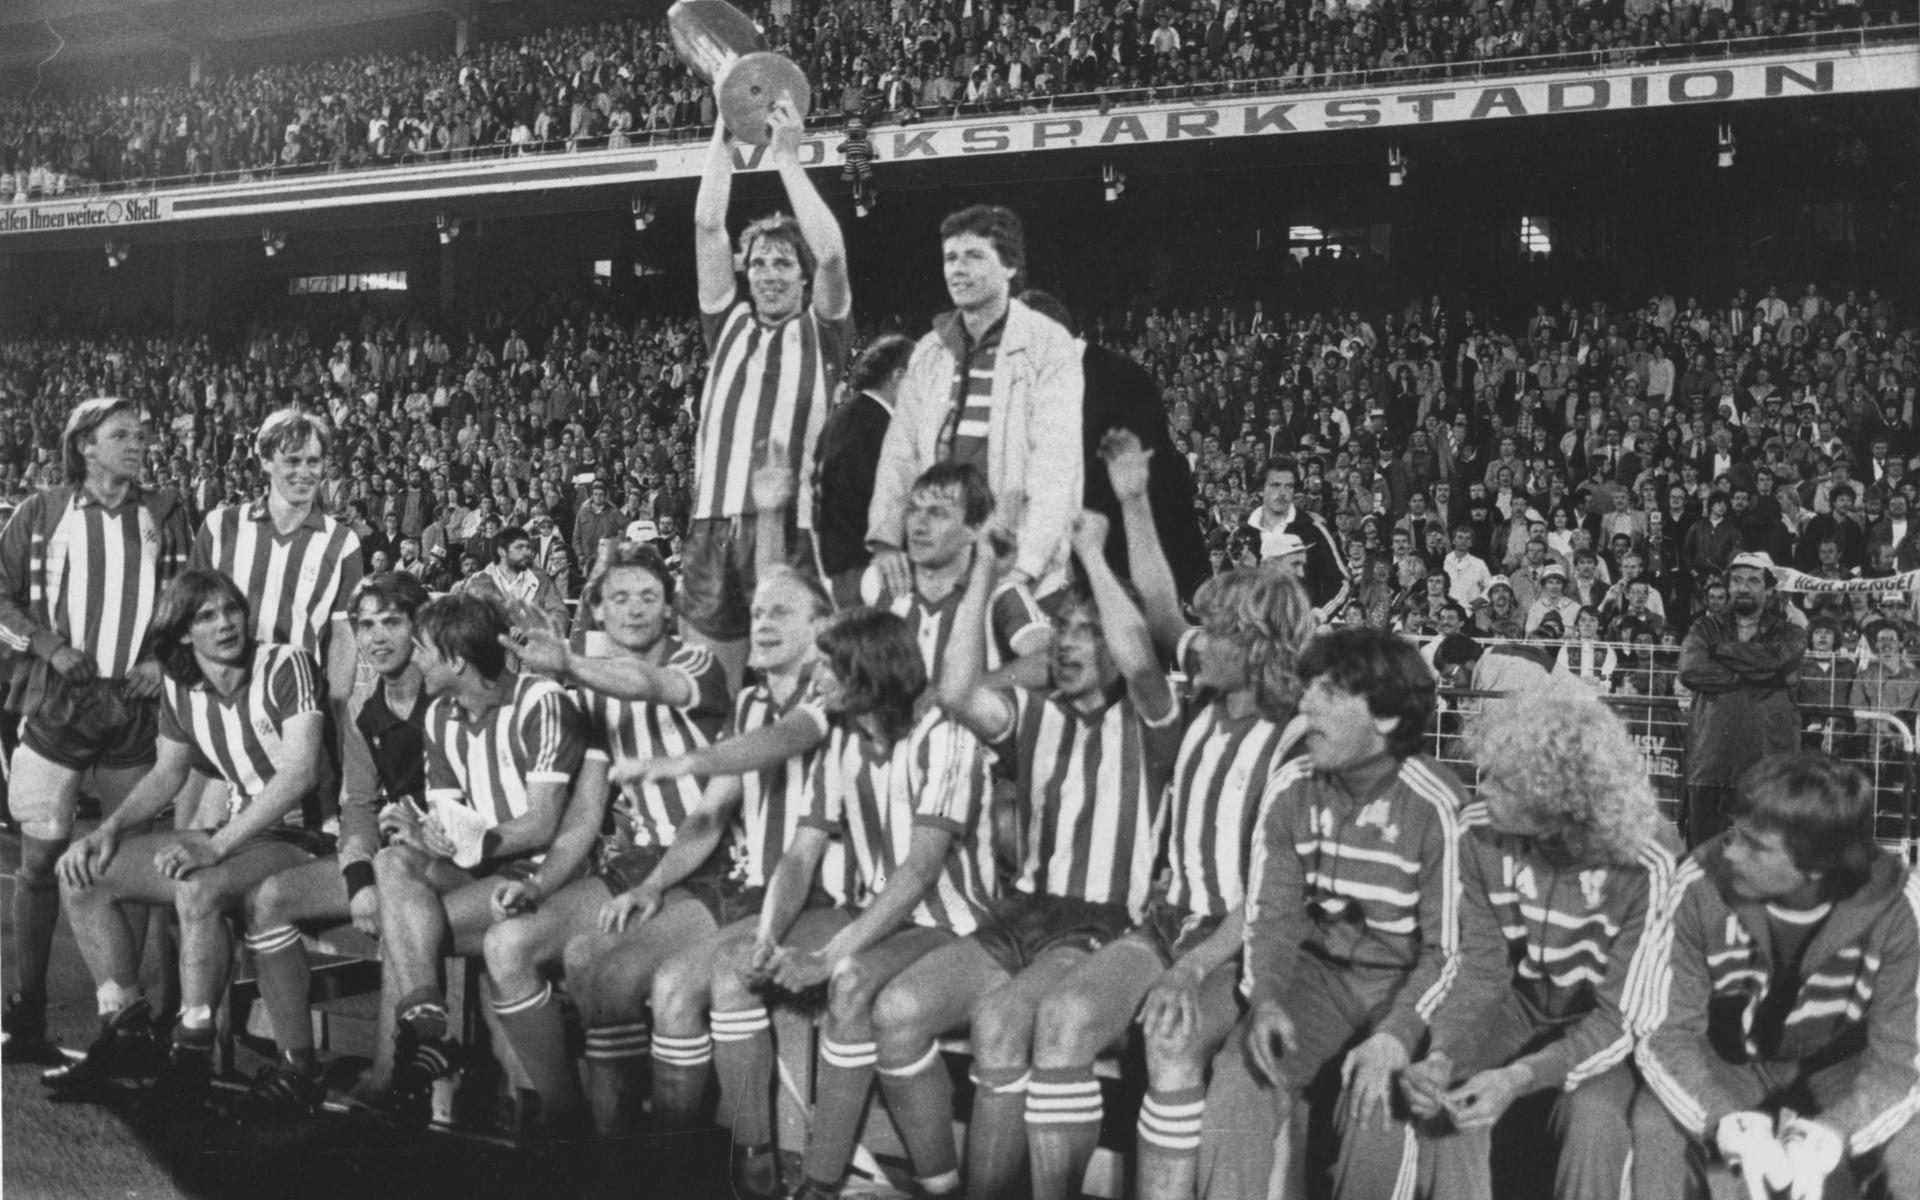 IFK Göteborg vann Uefacupen 1982 och 1987. Även blåvita experter har efteråt haft svårt att förklara varför just 1982 års generation svarade för ett internationellt genombrott som inget annat nordiskt lag tidigare hade mäktat med.  En viktig förklaring är Torbjörn Nilsson som med sina nio mål blev Uefacupens skyttegång och dominerande gestalt.  Även mittbacken Glenn Hysén (som värvats för 25 000 kronor från Hisingsklubben Warta) var betydelsefull. Men kanske kom trots allt IFK:s ordförande Gunnar Larsson sanningen närmast när han betonade laget som kollektiv: ”Våra framgångar har baserats på inställningen att lagspel går före individualism”. Ett urval av blåvita bilder från denna storhetstid måste av nödvändighet – som det heter på göteborgska – göras fläckevis. Här är två ögonblick från Uefacupsegern på bortaplan den 19 maj 1982 mot Hamburg: Torbjörn Nilsson har j ust gjort 2-0-målet i den andra finalen mot Hamburg och hela laget jublar på Volksparkstadion. Bilderna är alltså tagna i Västtyskland. Men de hör utan tvekan till den göteborgska idrottshistorien. 